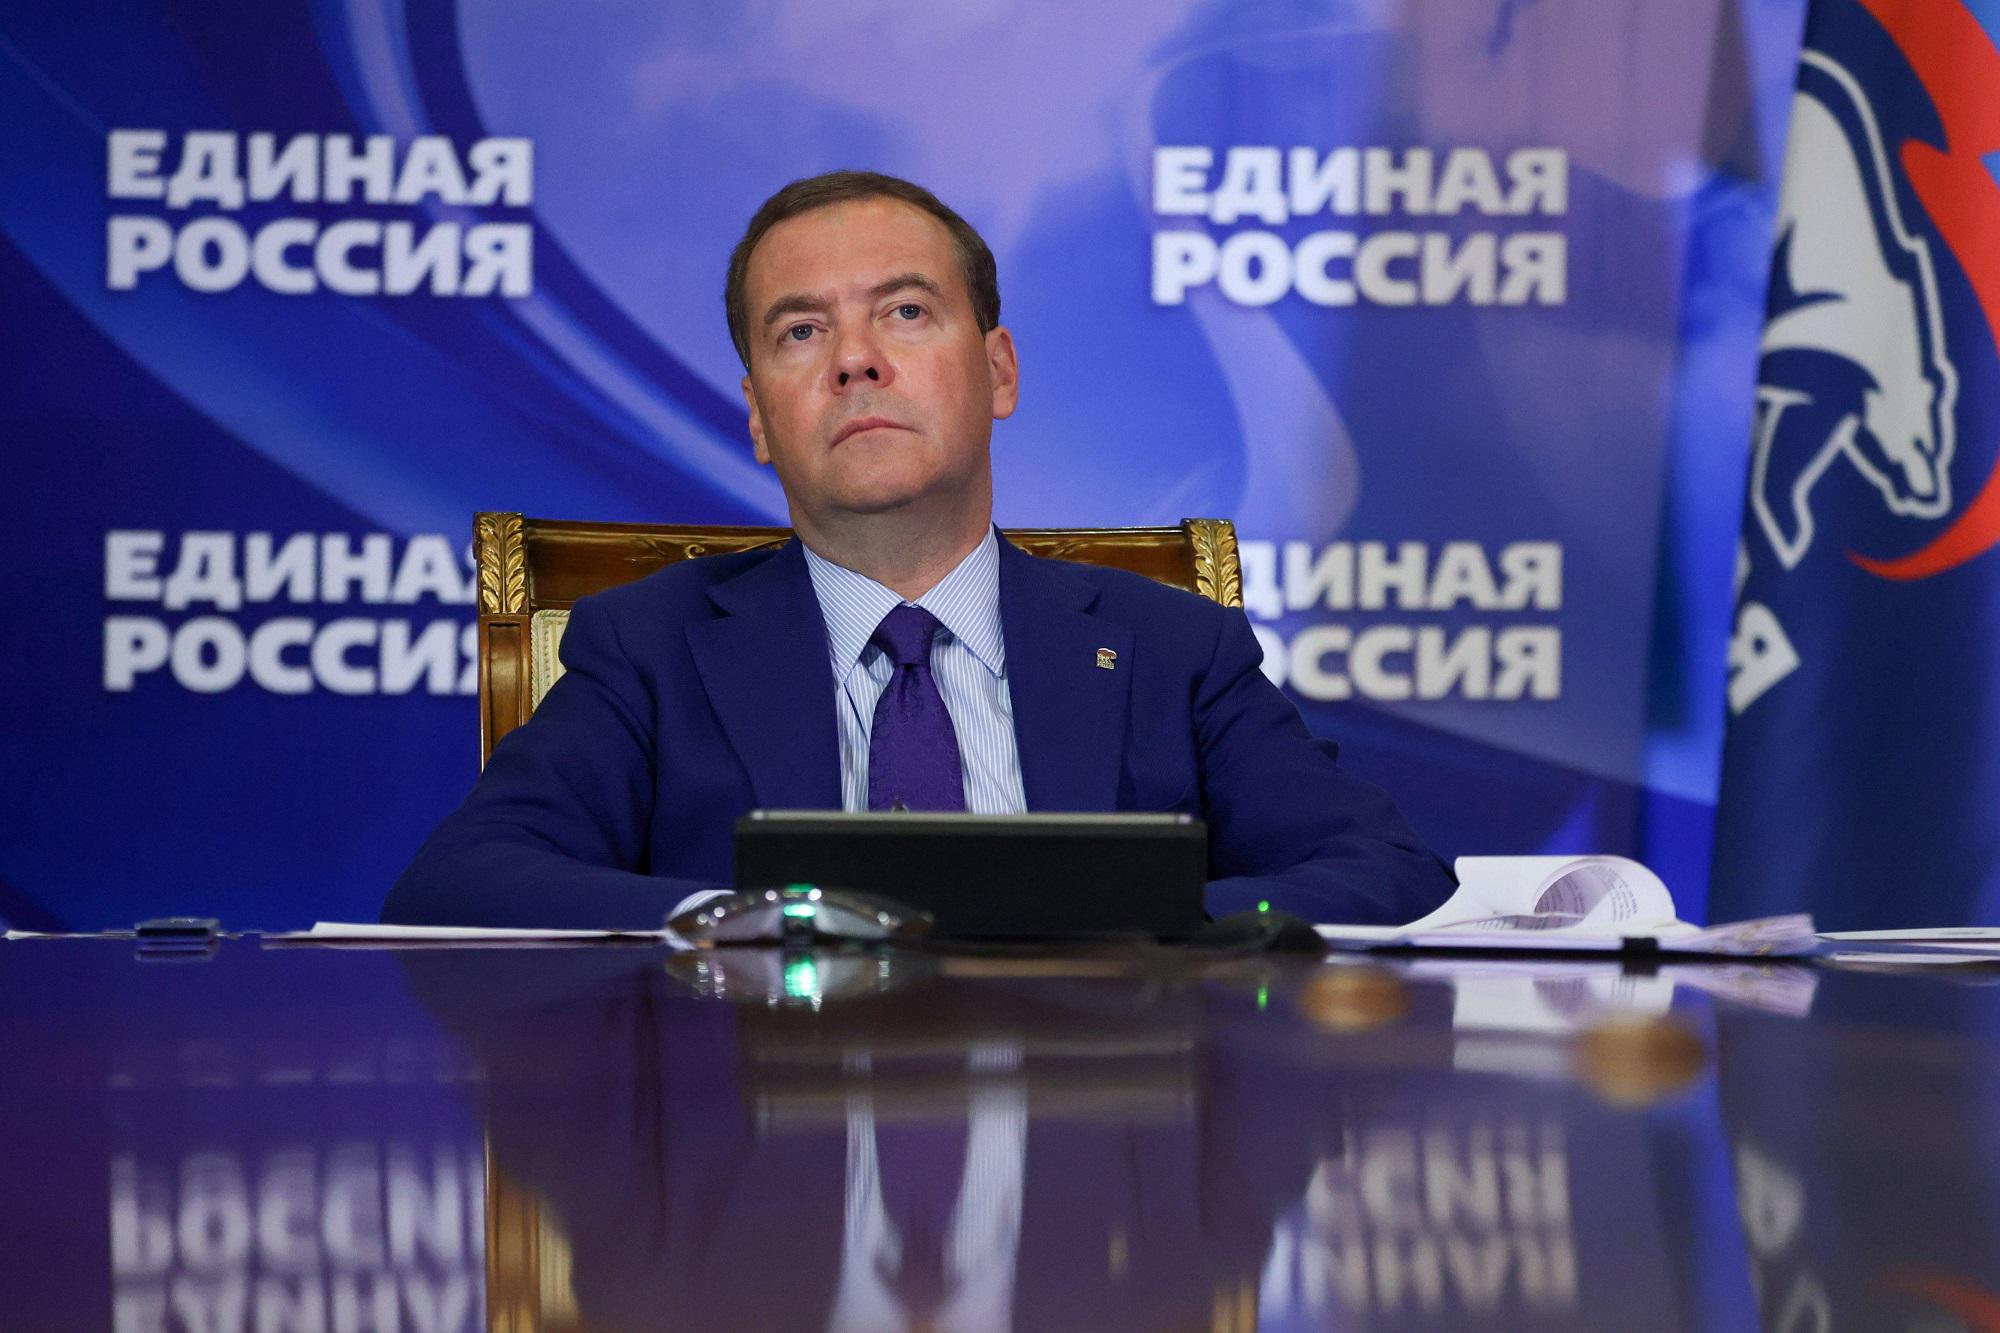 Ucraina, la proposta di pace di Medvedev: "Deve dissolversi e riconoscere che appartiene alla Russia"